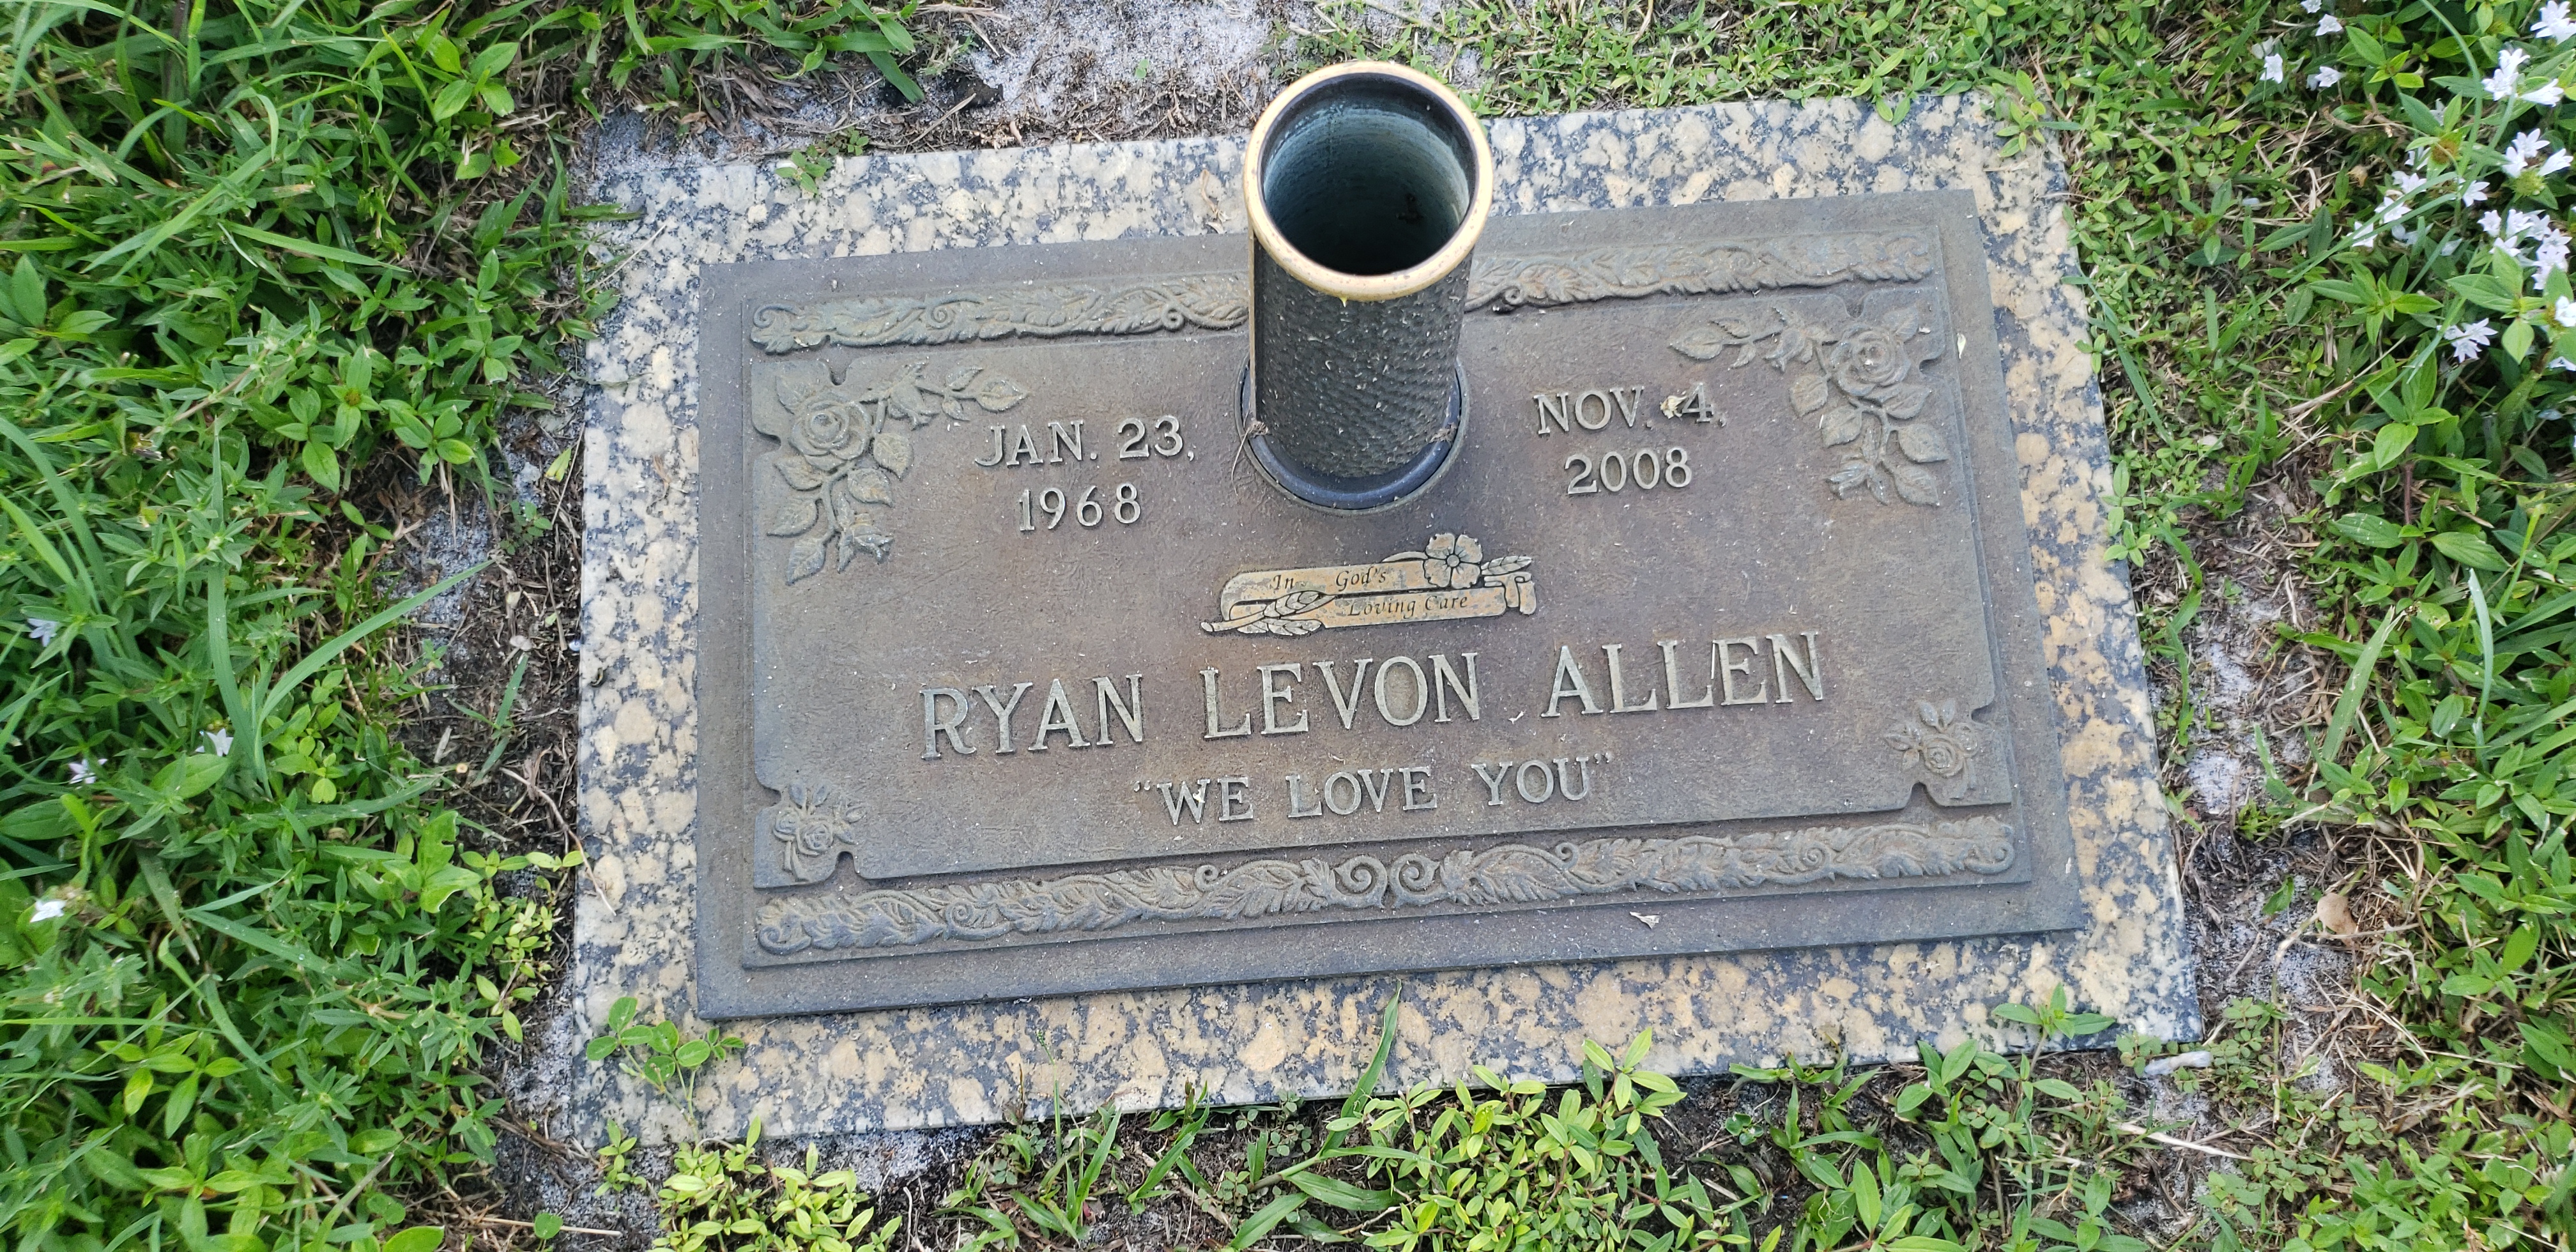 Ryan Levon Allen